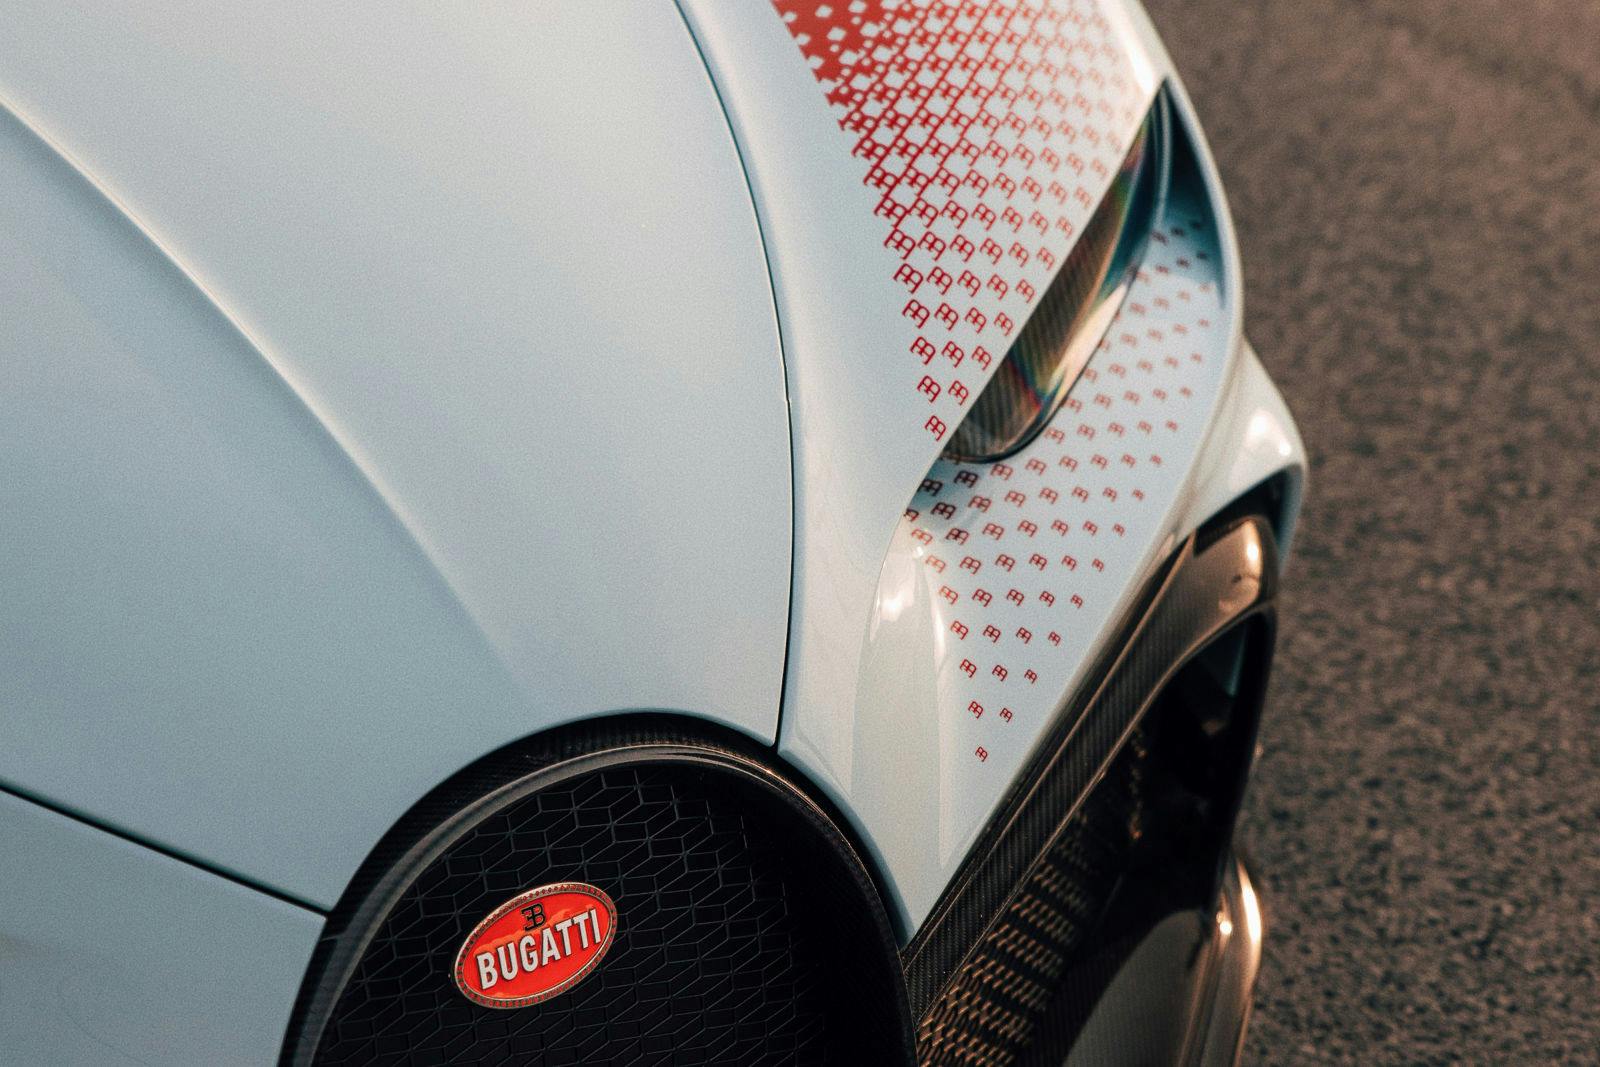 Vielen Details, die Bugatti speziell für dieses Fahrzeug erschaffen hat, sind eine Hommage an die legendären Grand-Prix-Rennwagen von Bugatti der 1920er- und 1930er-Jahre.